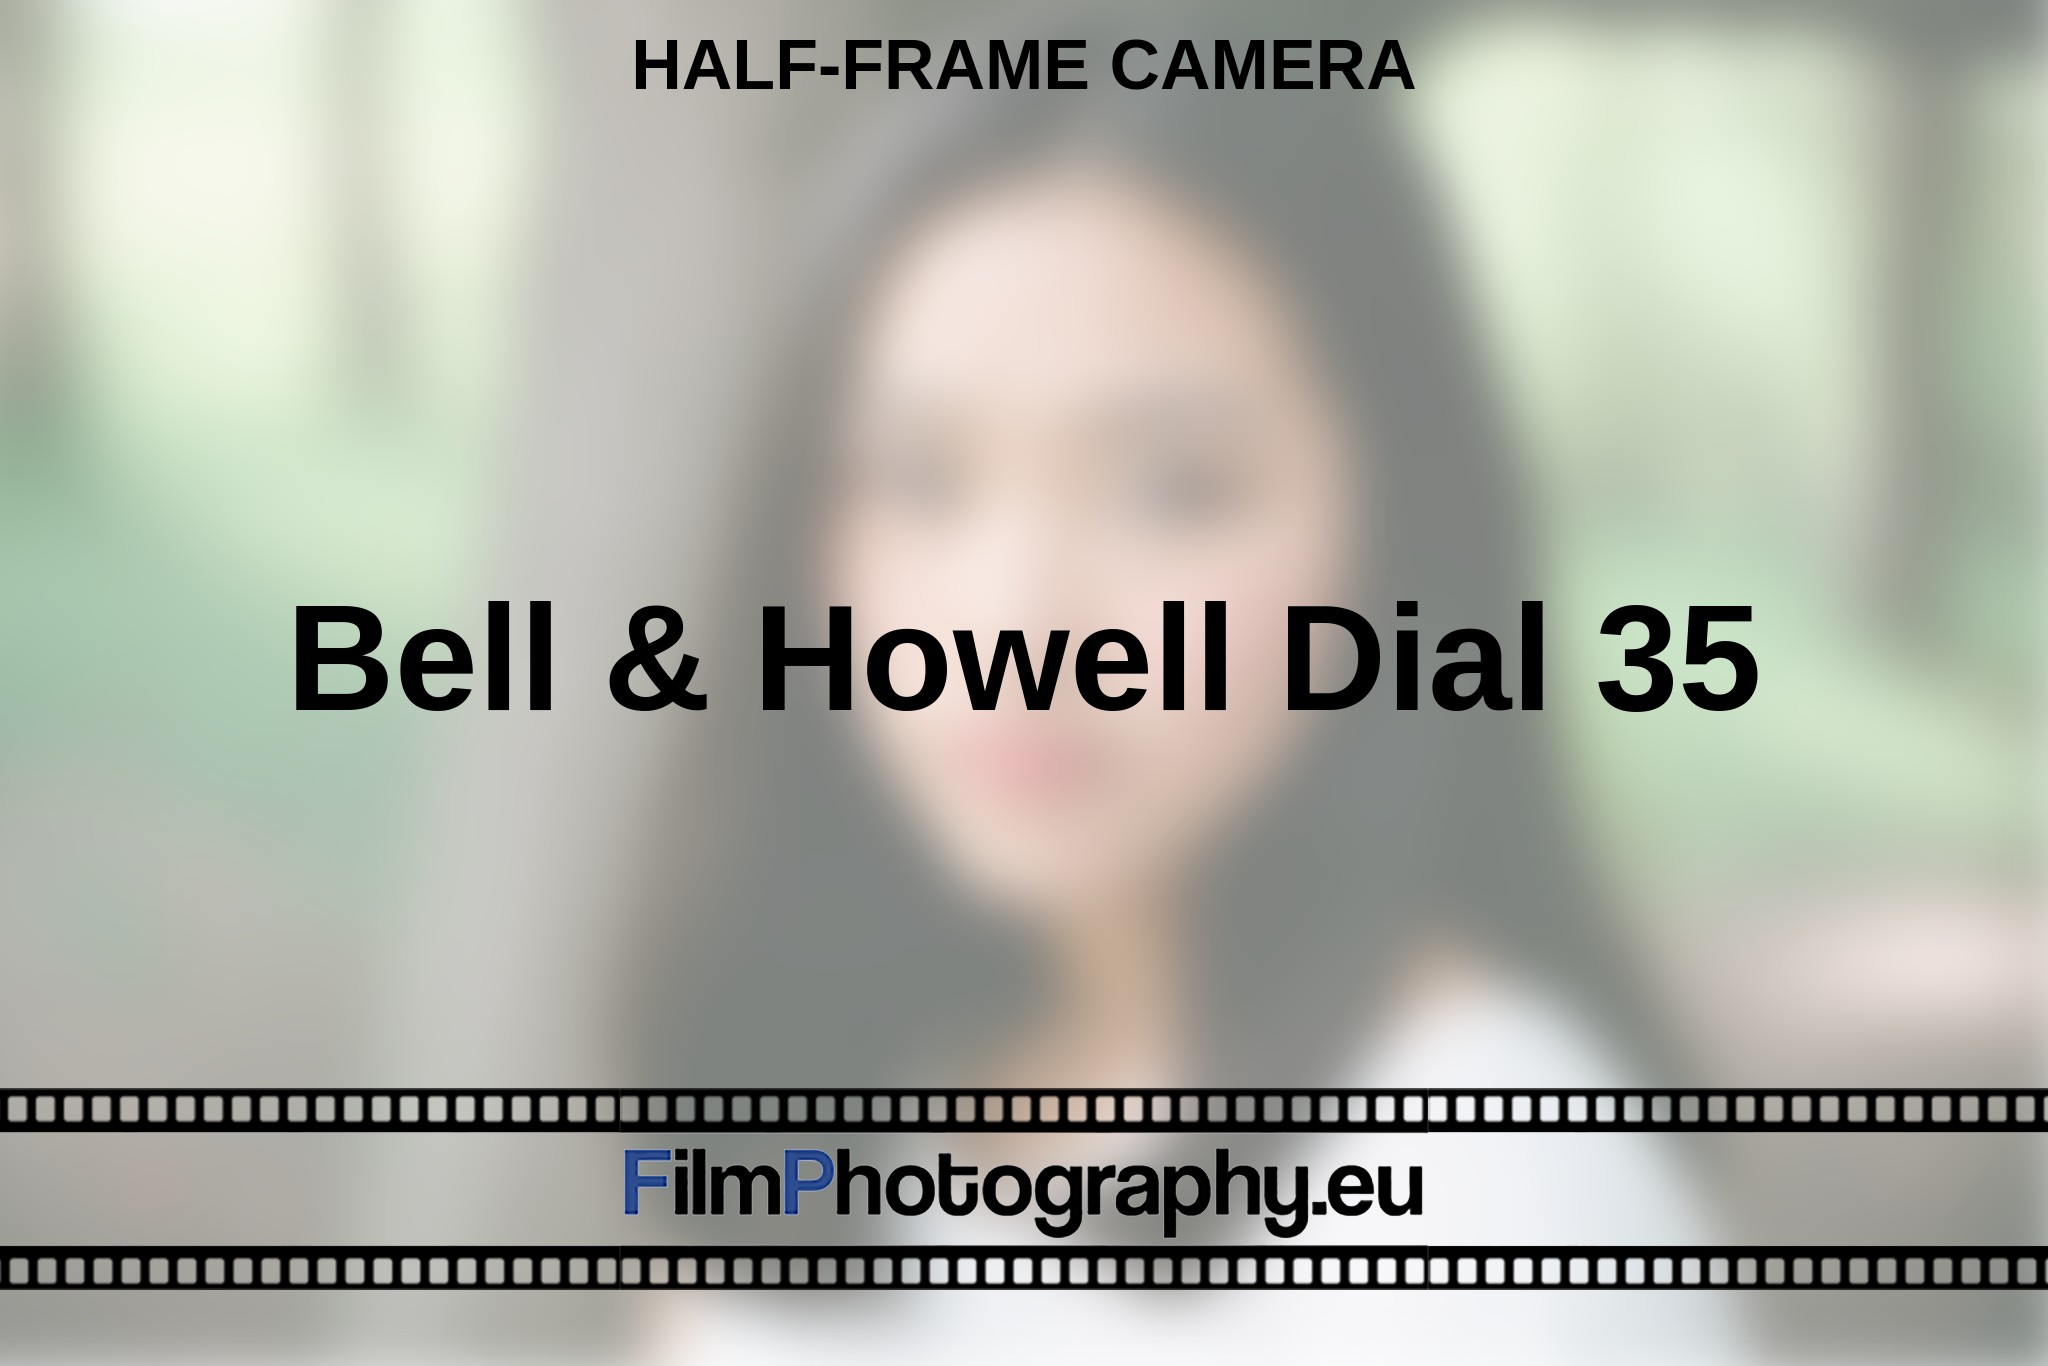 bell-howell-dial-35-half-frame-camera-en-bnv.jpg